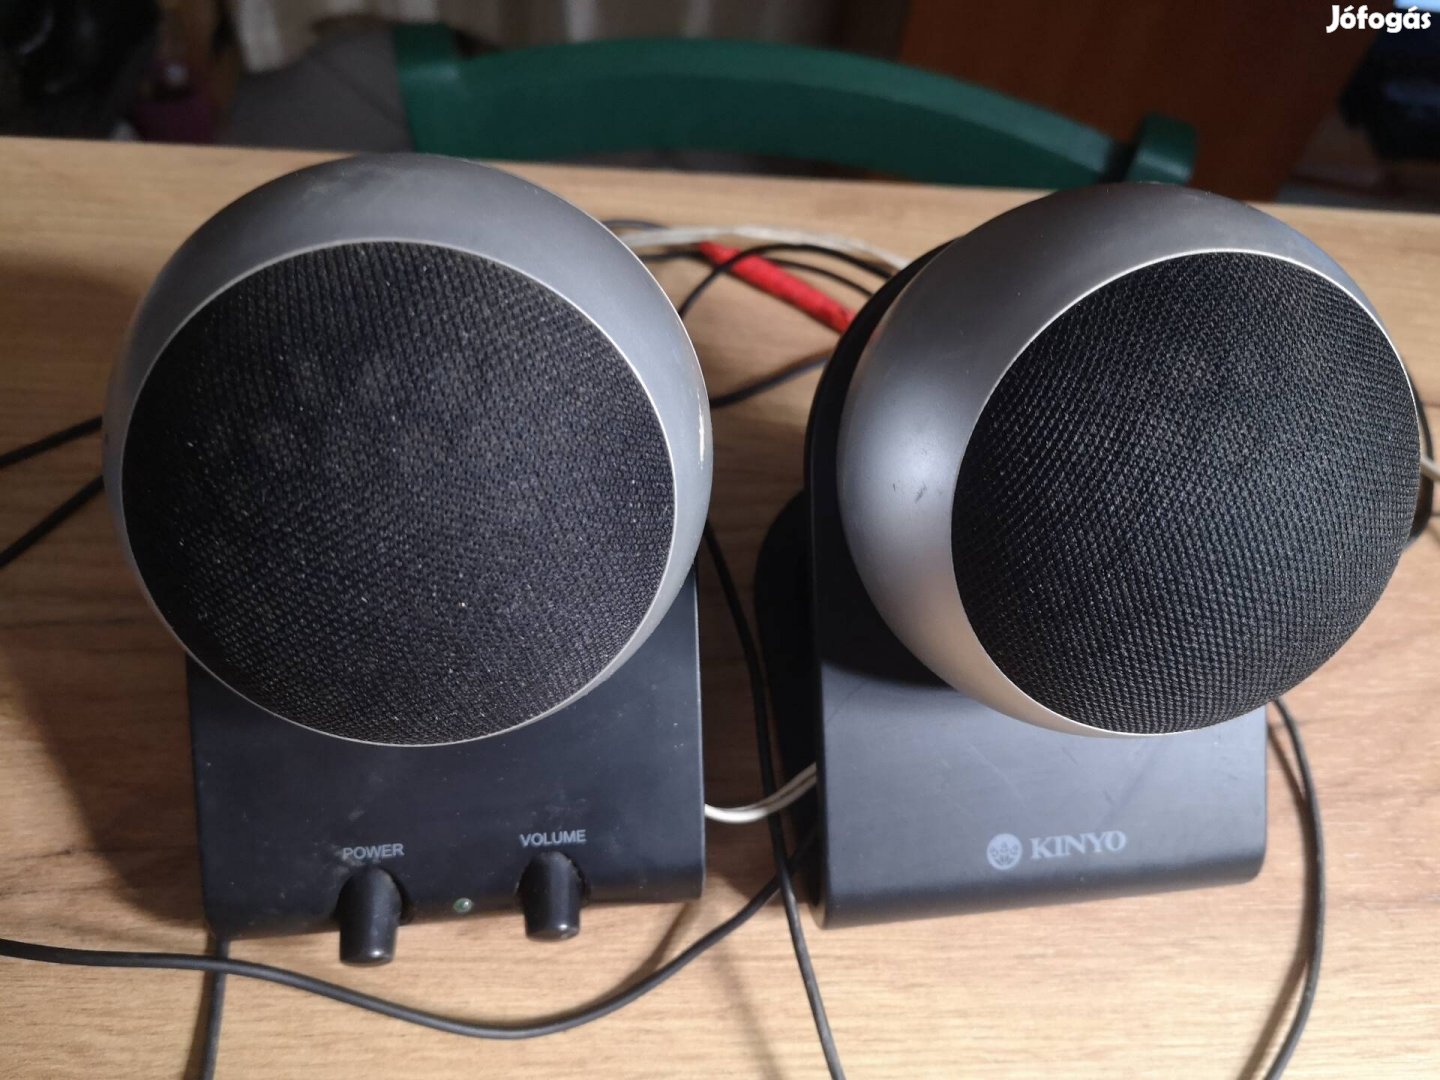 Kinyo multimedia hangszórópár jelképes áron szinte ingyen